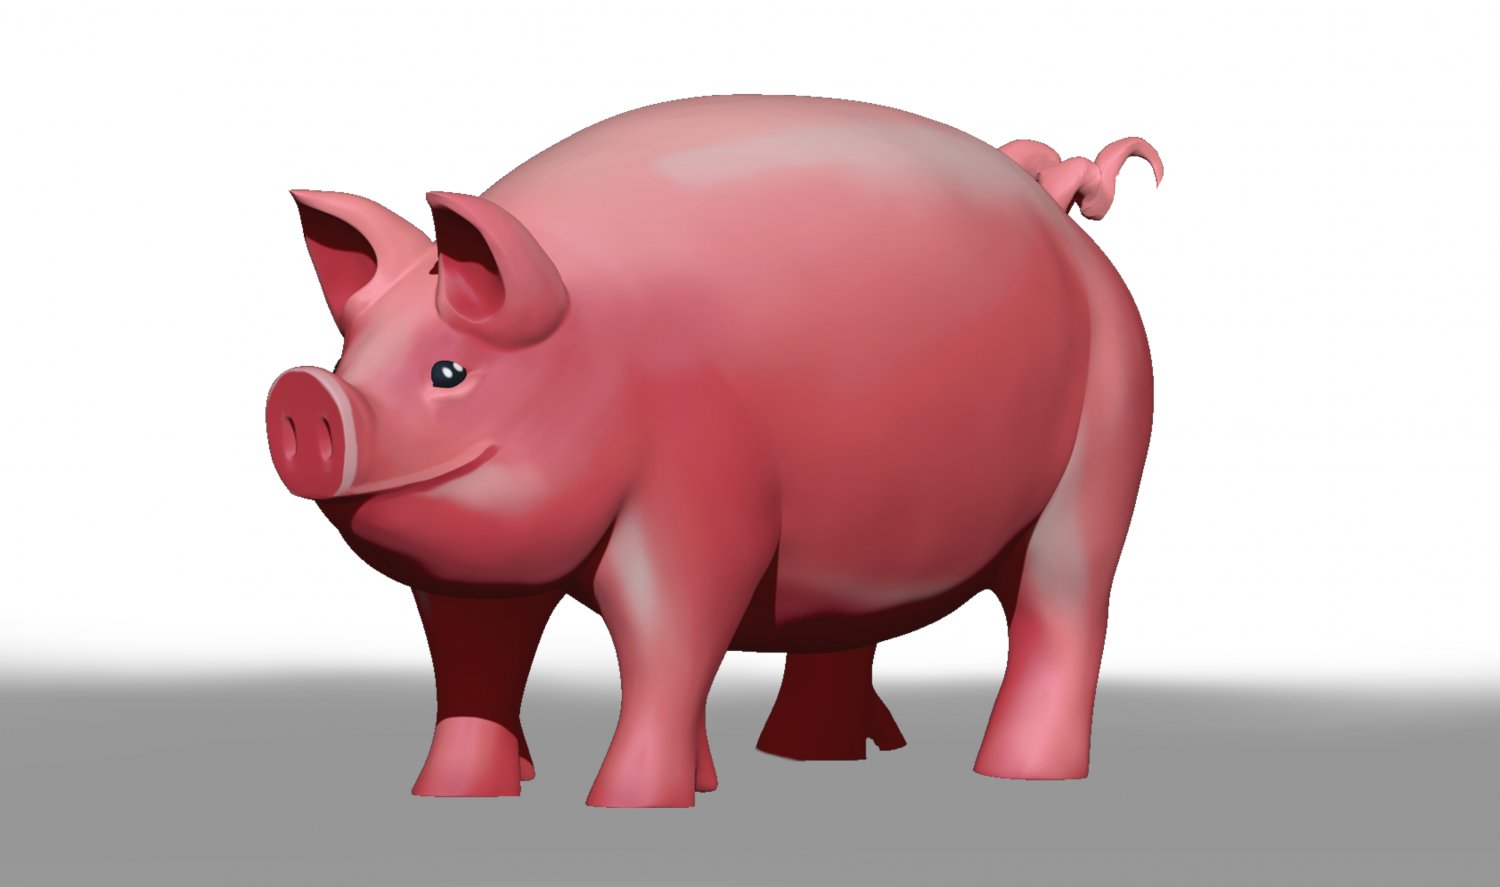 Lập trình hình ảnh của bạn với một chiếc lợn điển trai được tạo ra bởi Zbrush và sơn với polypaint. Chúng tôi đang cung cấp một file mô hình 3d lợn tuyệt đẹp để tải về trên 3DExport. Hãy thêm nó vào các tác phẩm 3D của bạn và mang đến vẻ đẹp tinh tế bất ngờ.